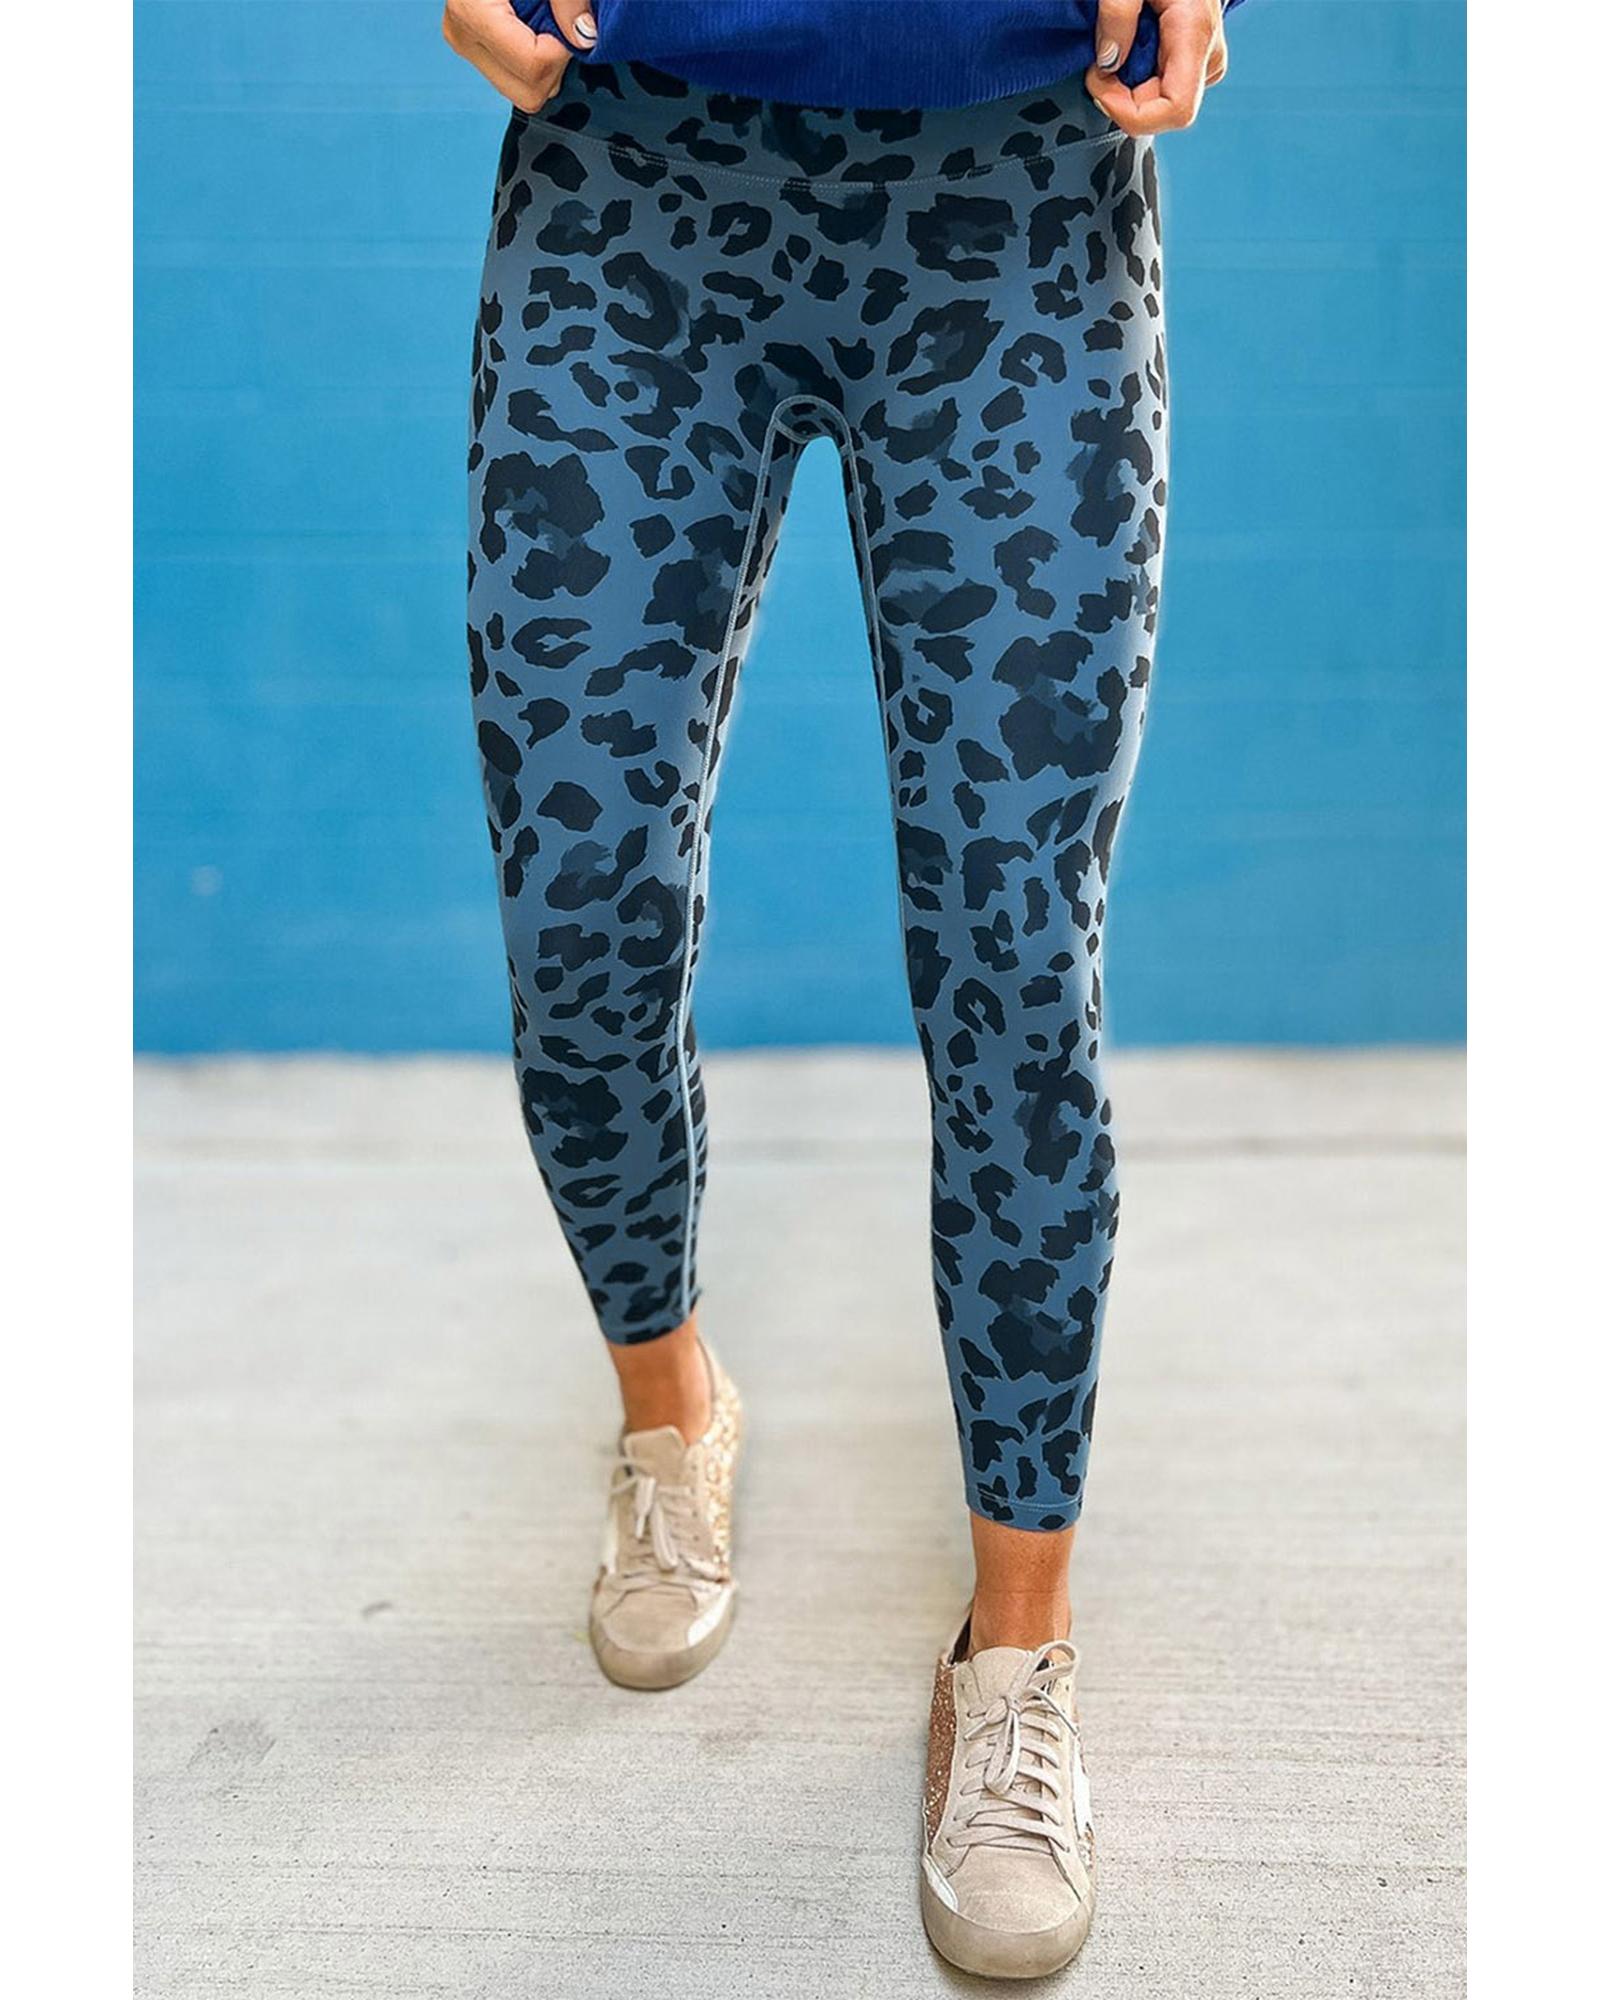 Leopard Print Active Leggings - L